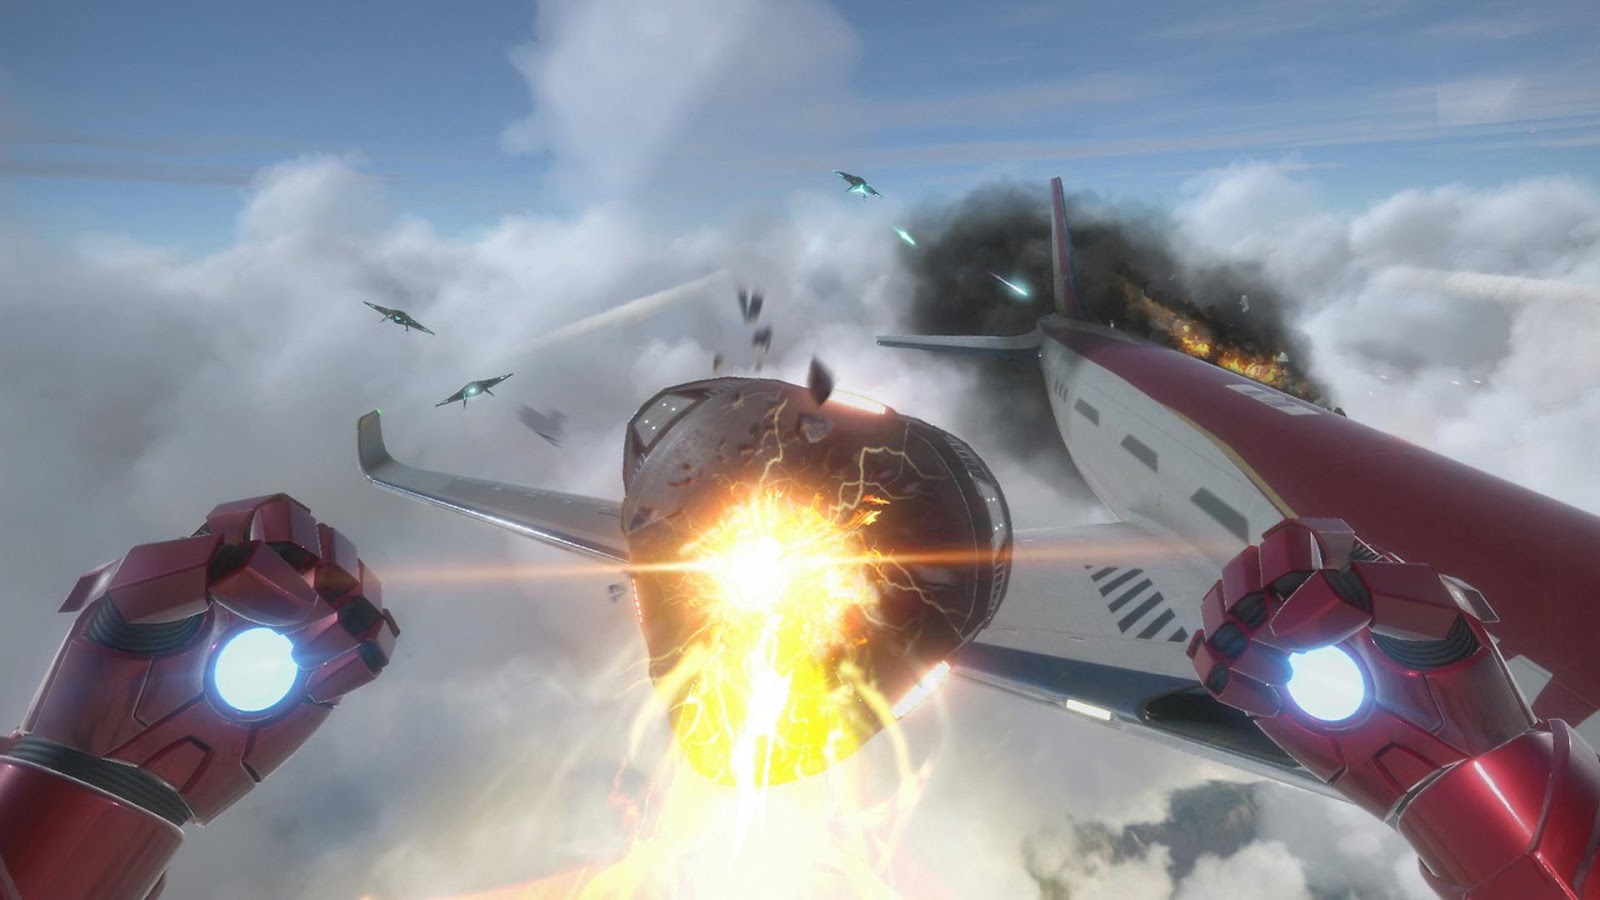 Լավագույն PS VR խաղեր. Երկաթե մարդուն երևում են ինքնաթիռի վերևում ինչ-որ բանով կռվելիս